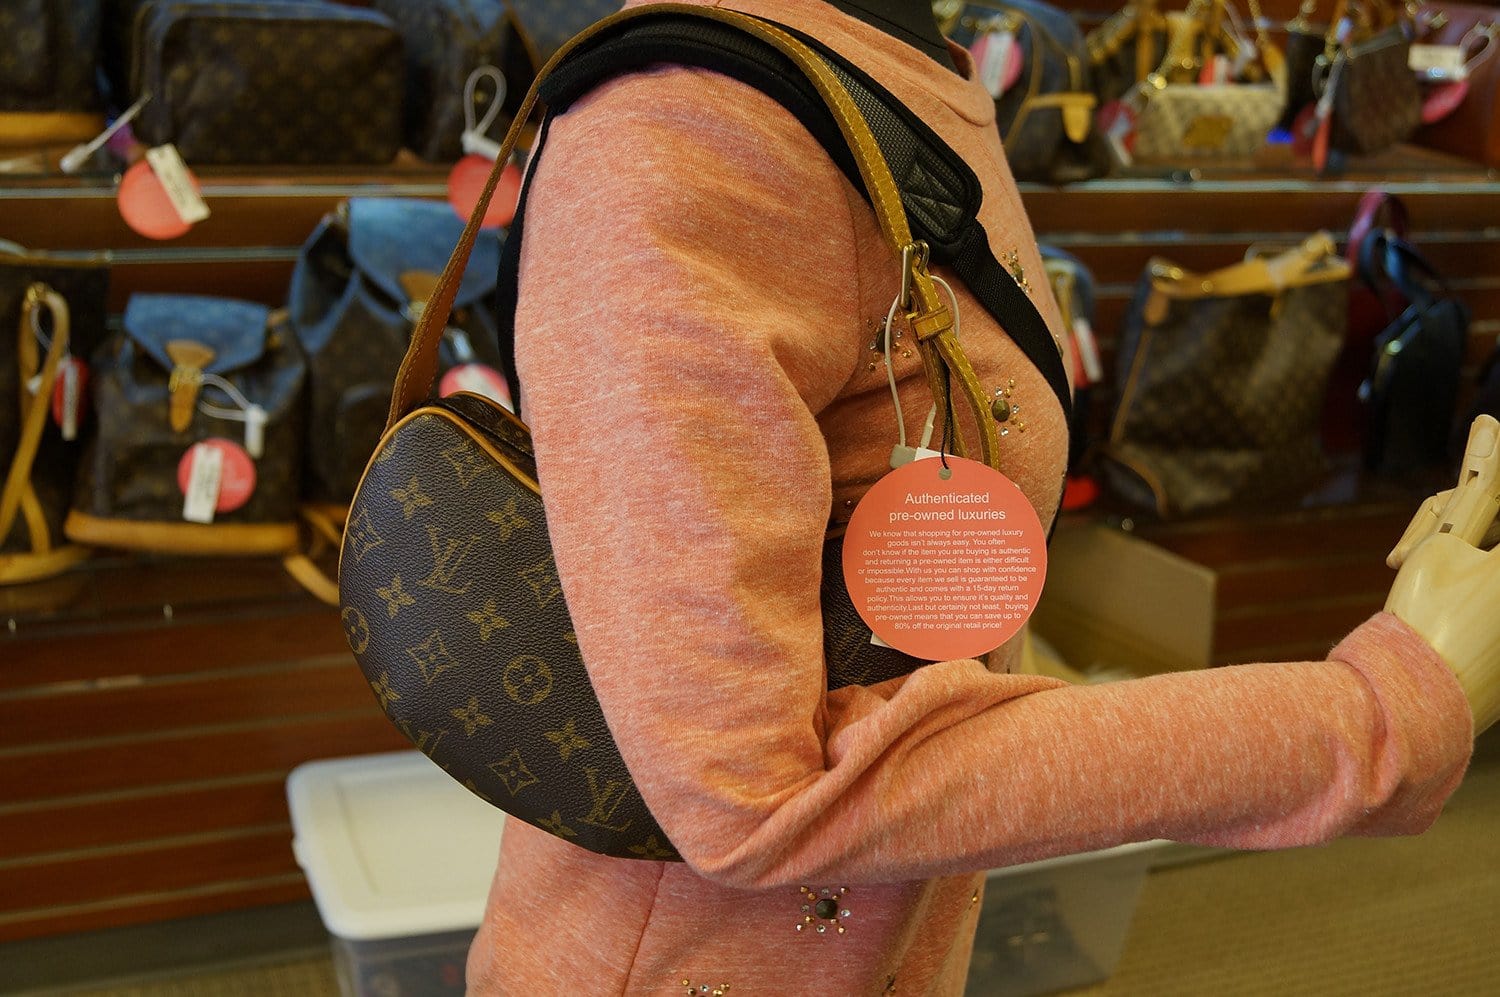 Louis Vuitton Pochette Croissant Bag Review 